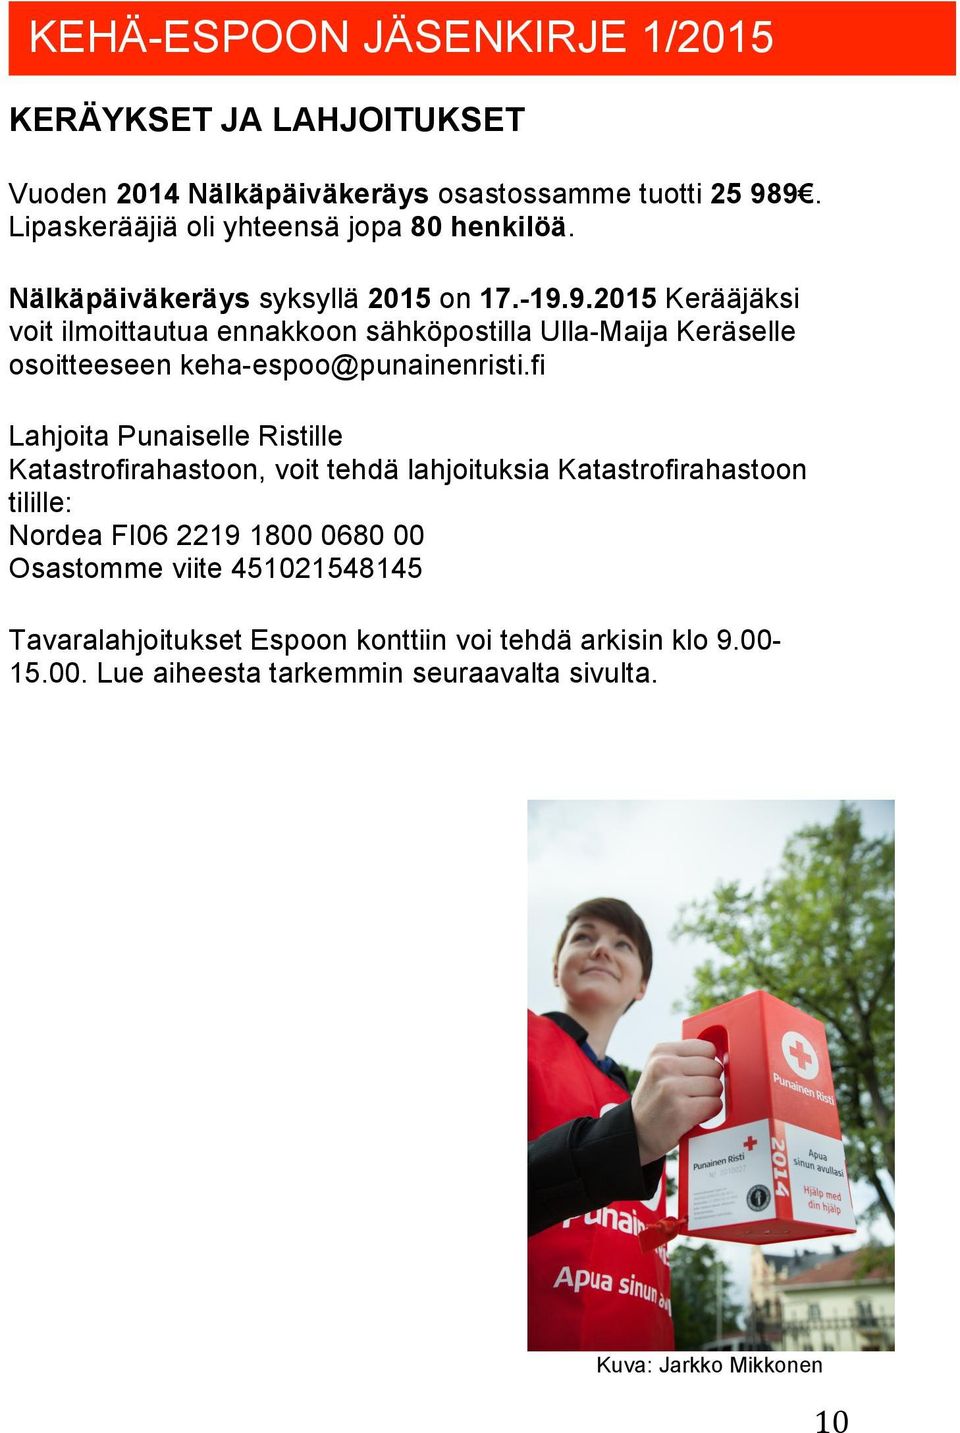 9.2015 Kerääjäksi voit ilmoittautua ennakkoon sähköpostilla Ulla-Maija Keräselle osoitteeseen keha-espoo@punainenristi.